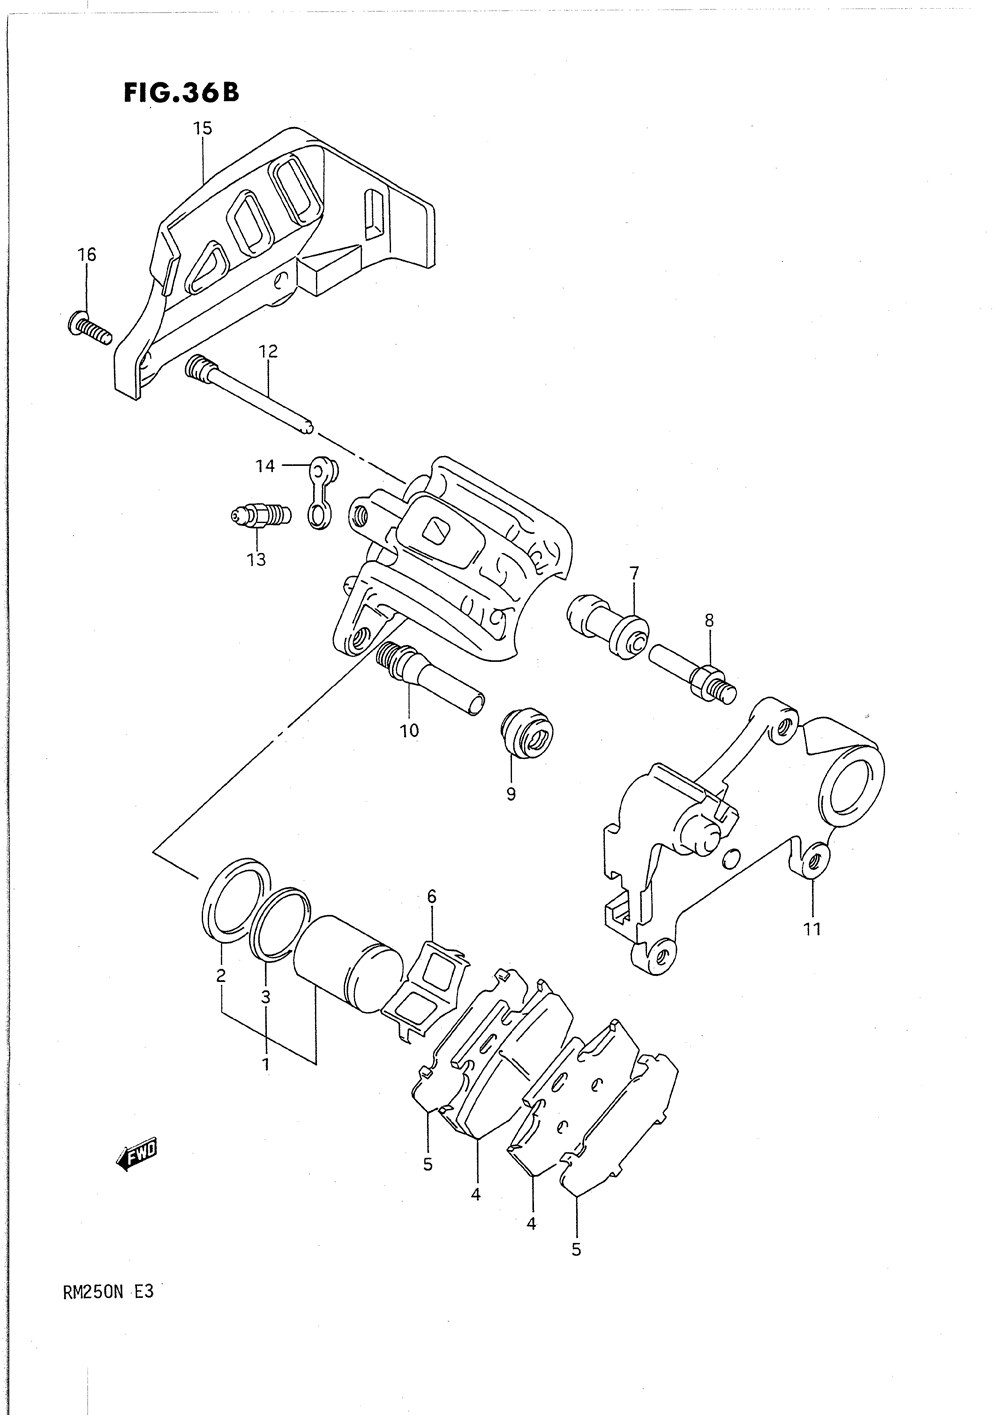 Rear calipers (model m)